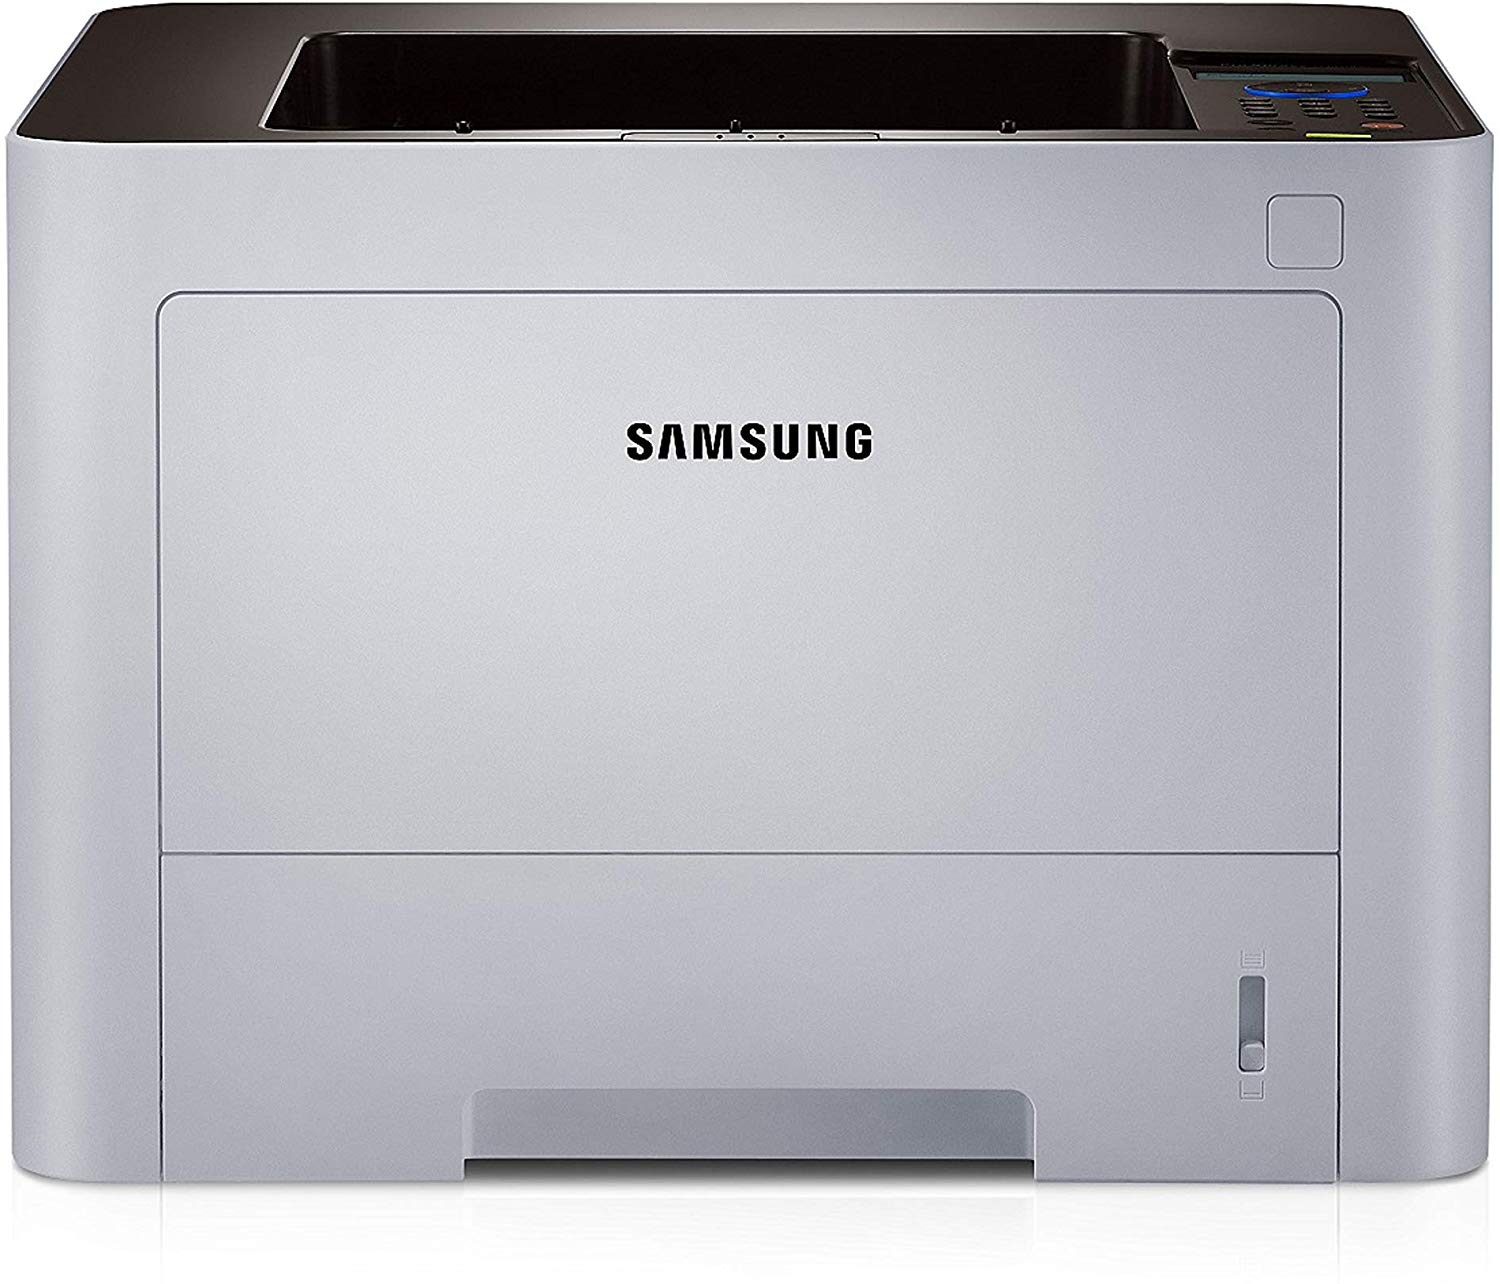 Samsung M3820Nd Stampante Laser, Bianco/Nero Rete Duplex automatico monocromatico